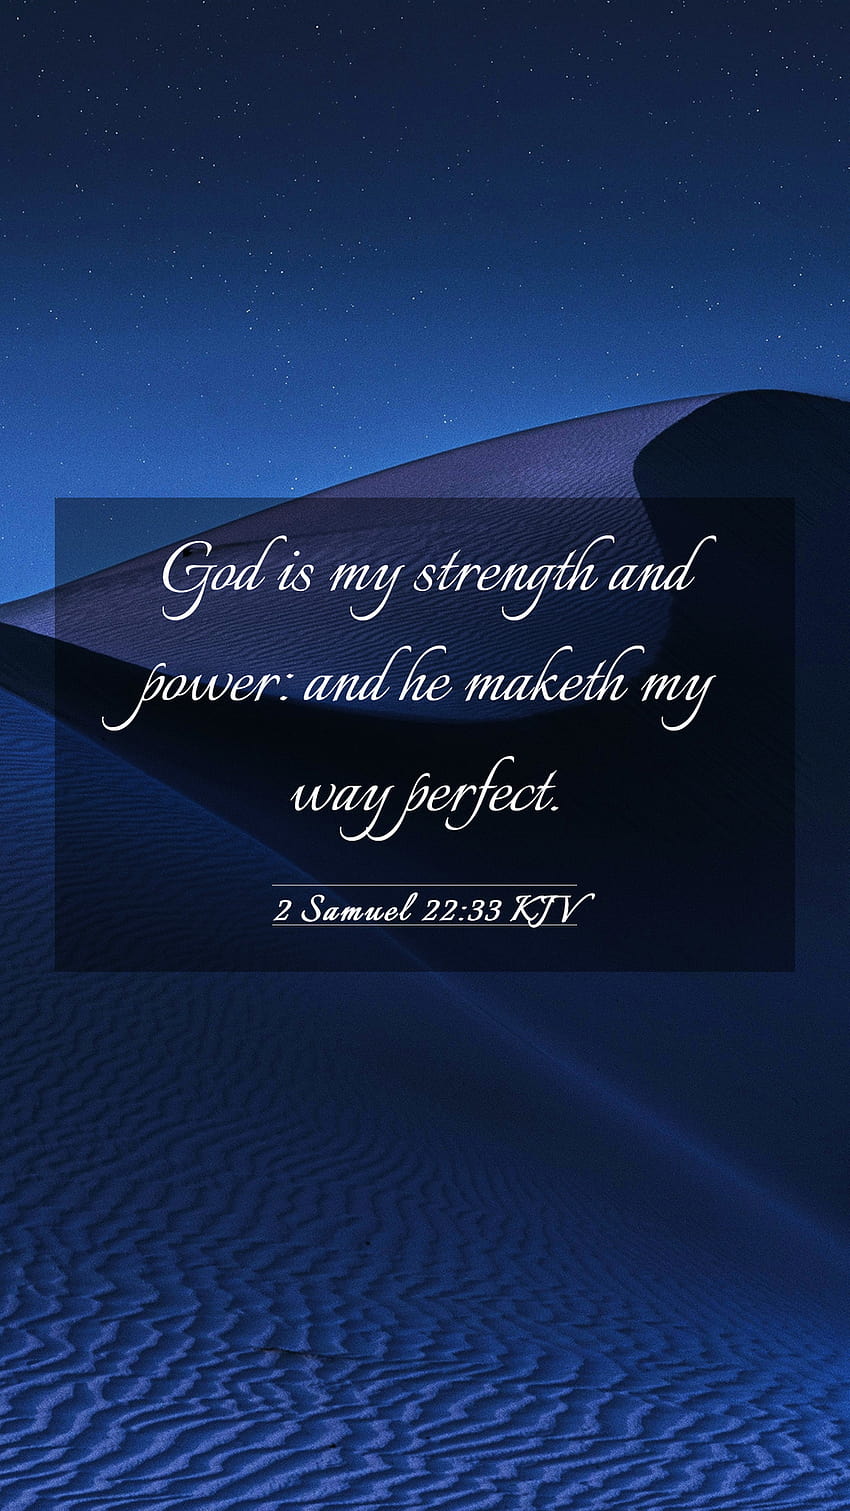 2 Samuel 22:33 KJV Mobile Phone, strength god power quote HD phone wallpaper